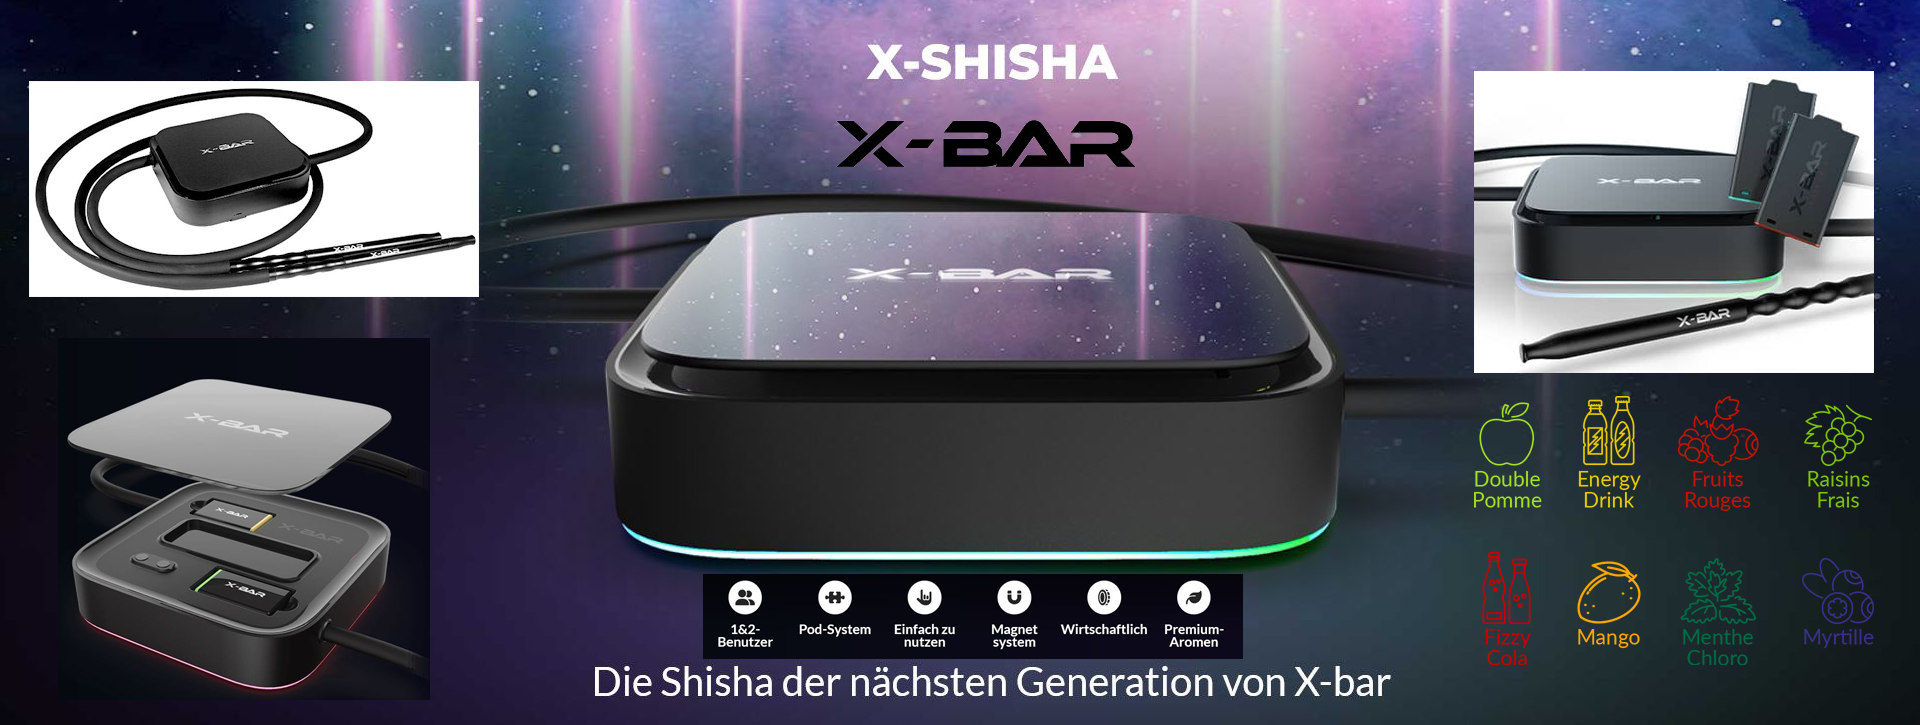 X-Bar X-SHISHA